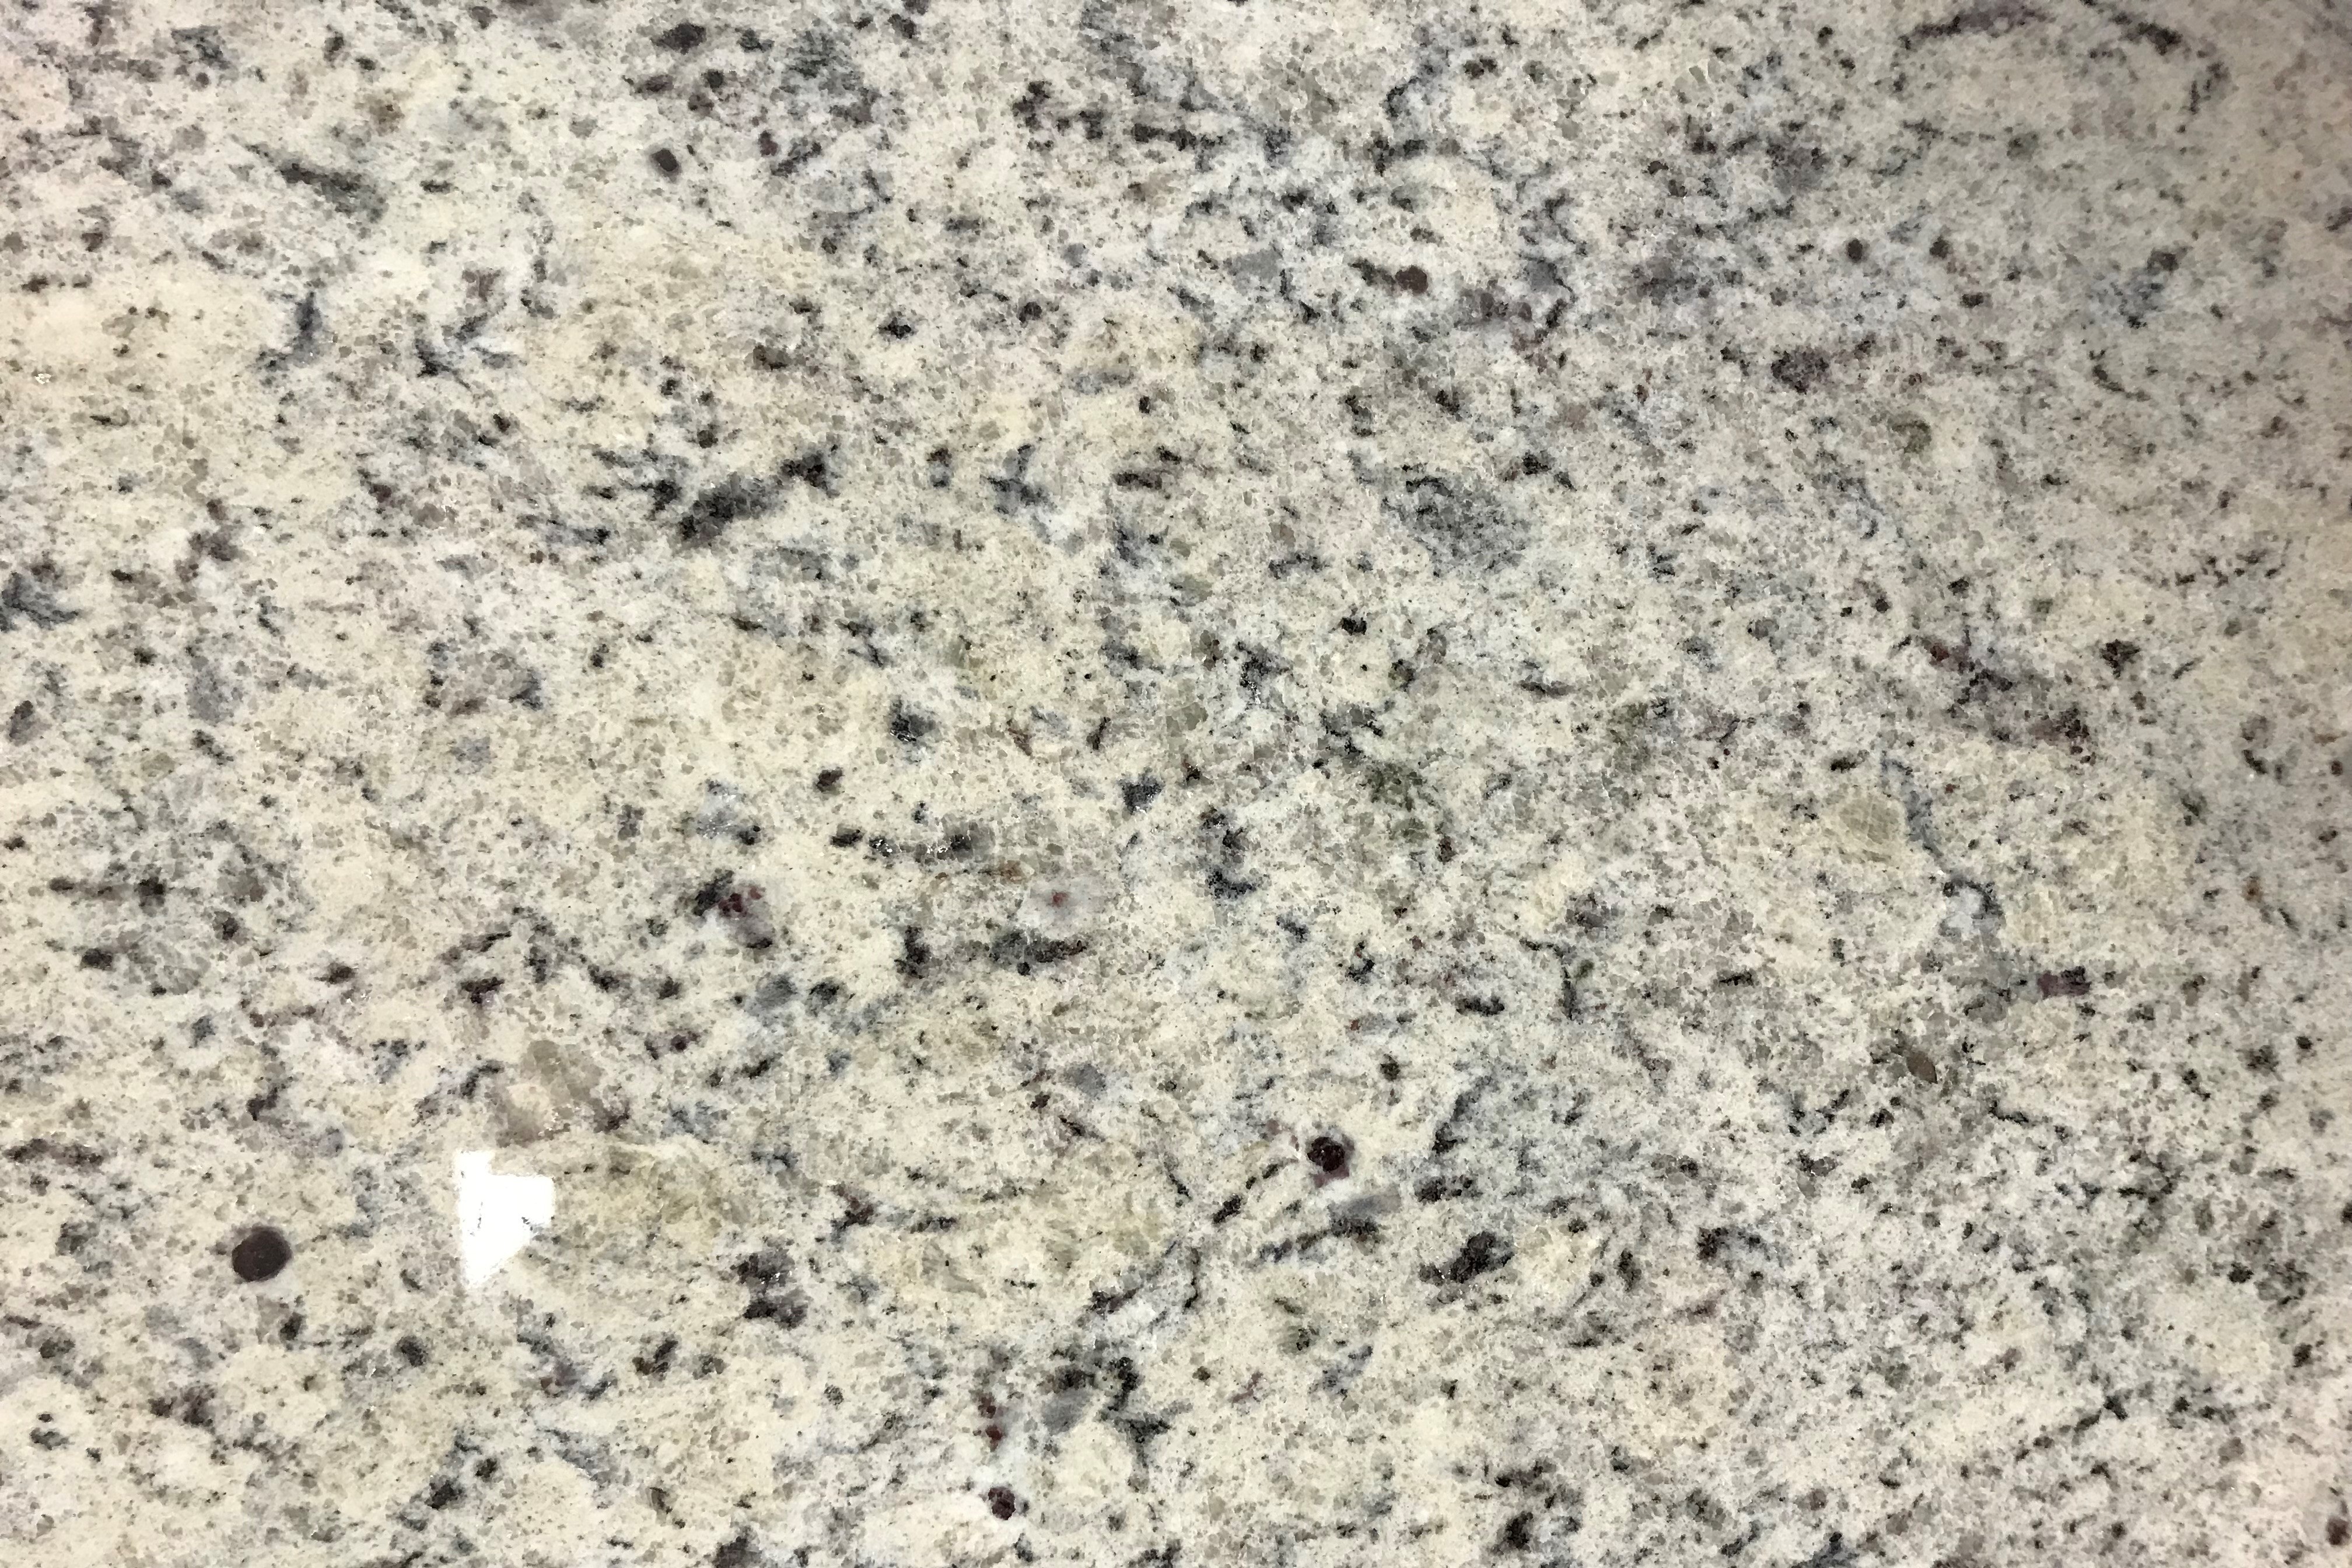 Dallas White Granite Countertops, Bath Countertops, Bar Countertops by TC Discount Granite